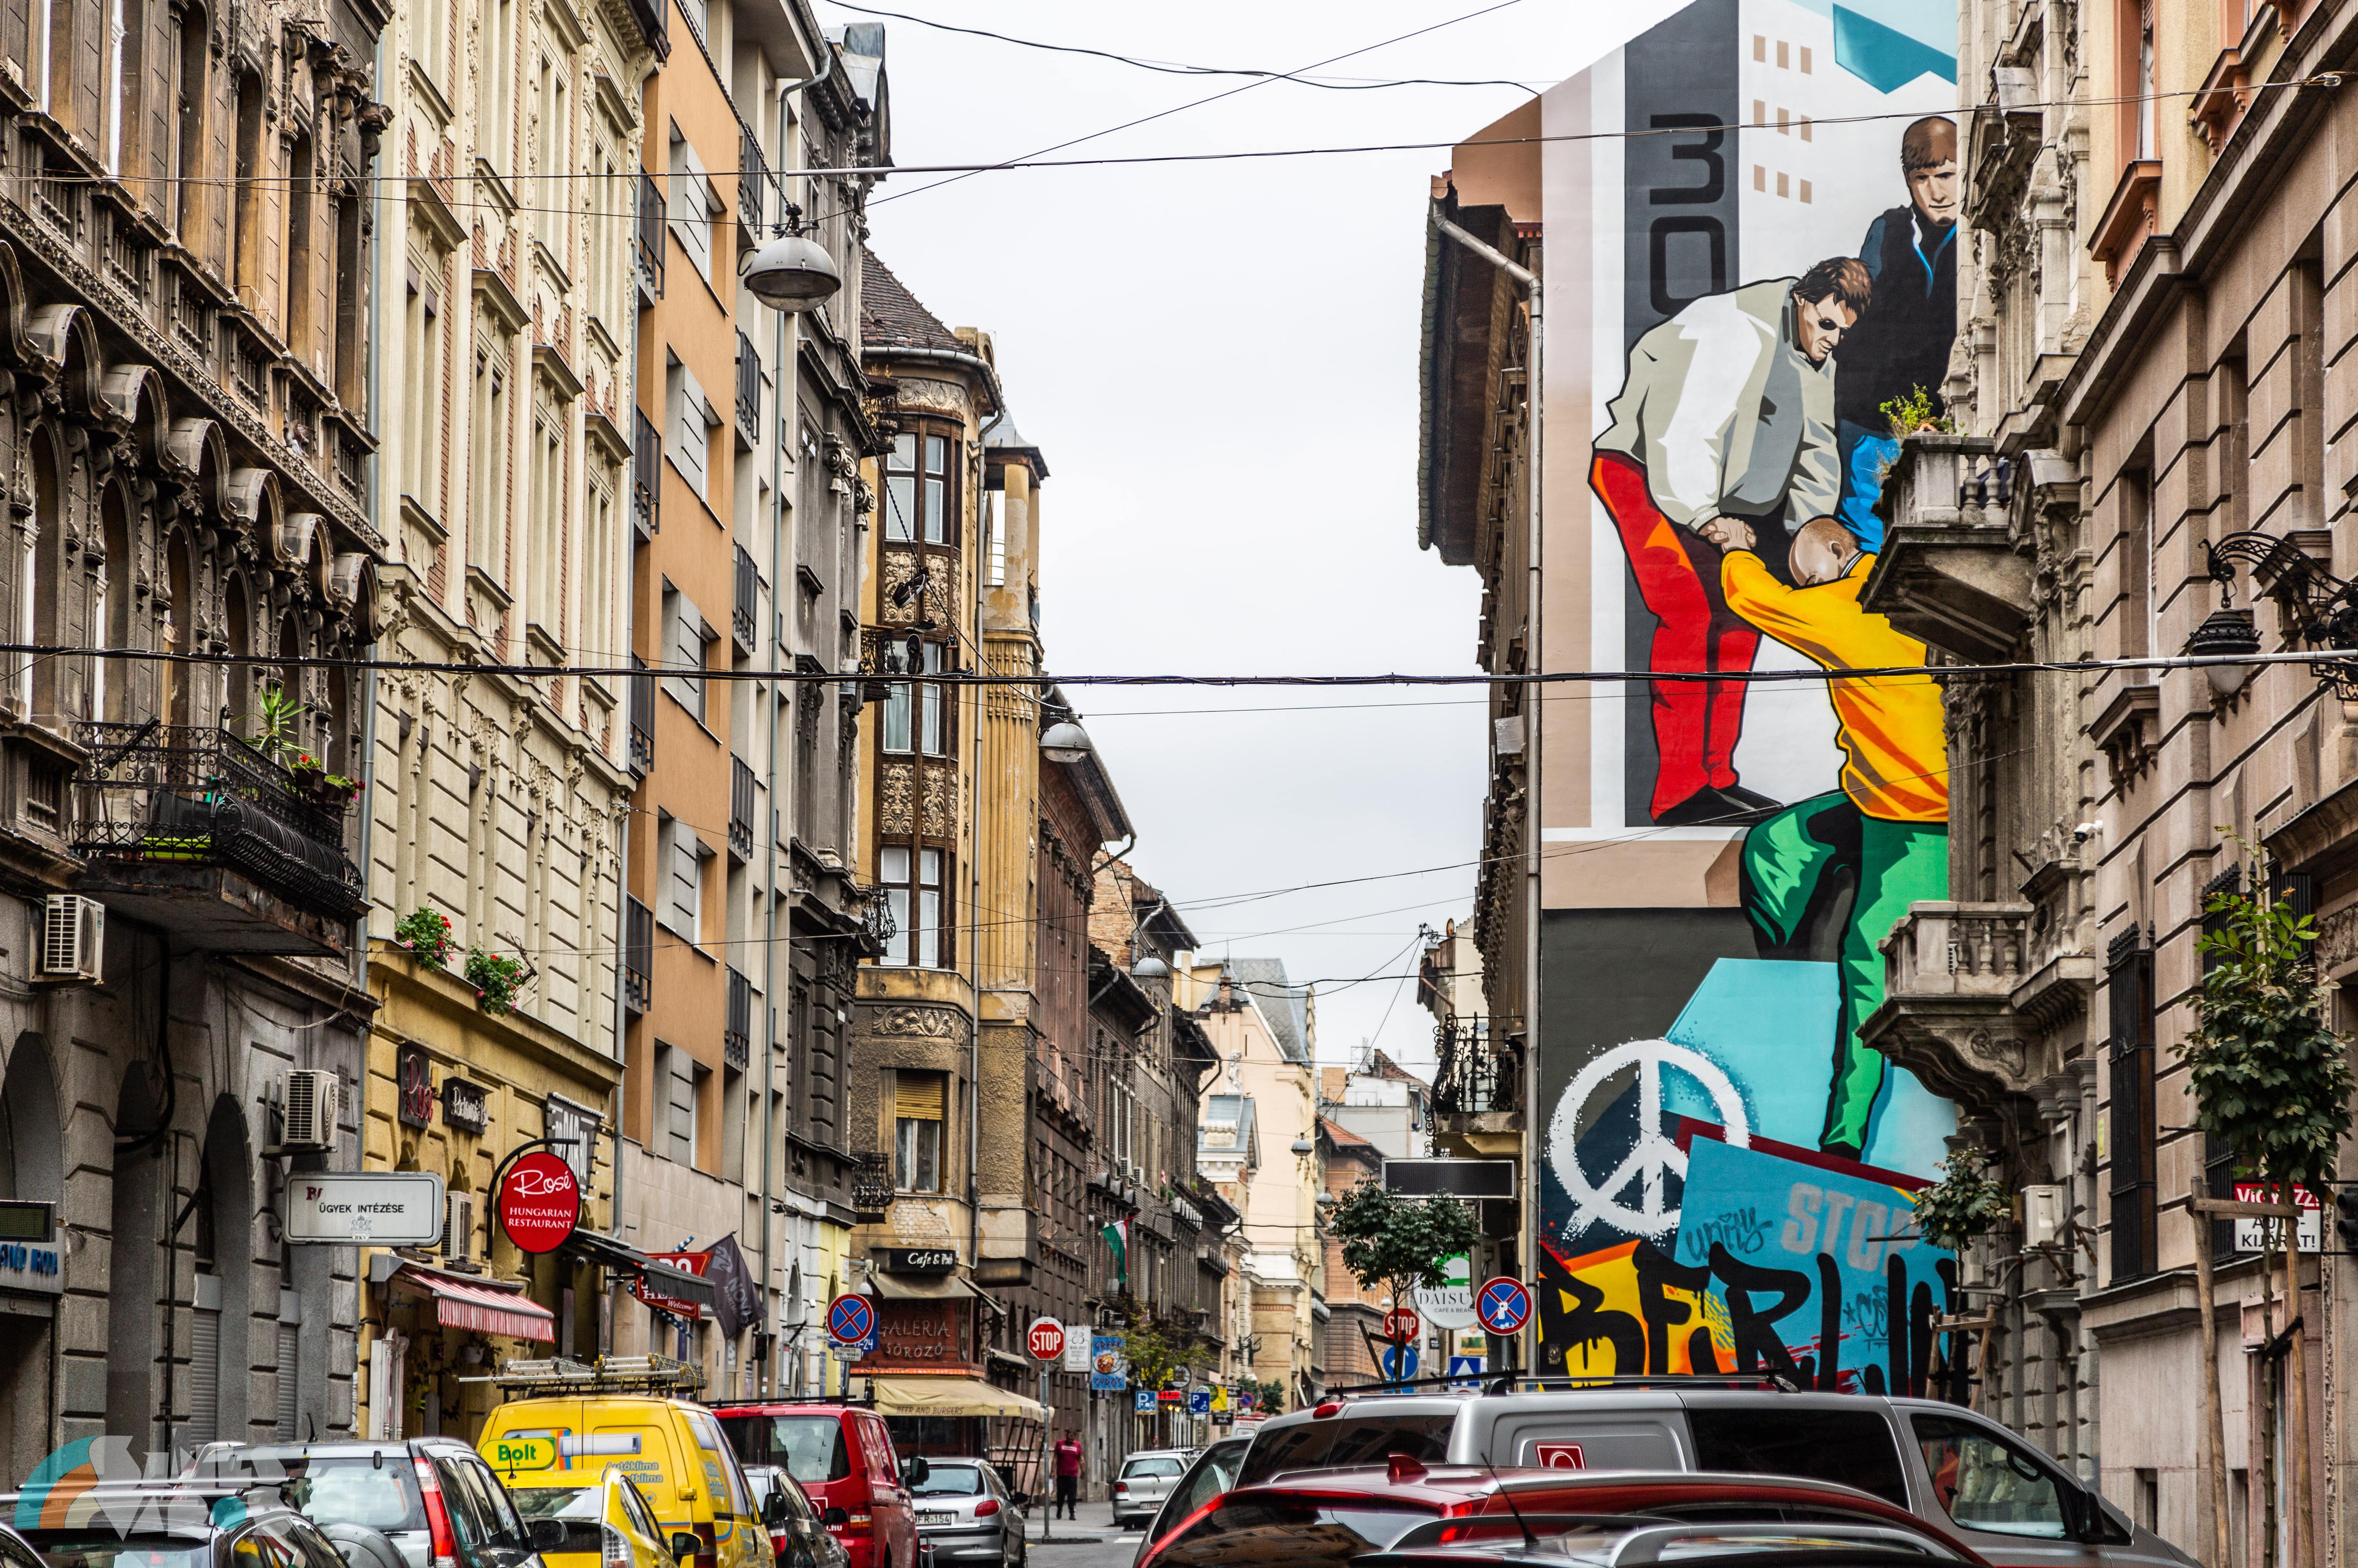 Németország újraegyesítése előtt tisztelgő, gigantikus falfestmény került egy budapesti tűzfalra